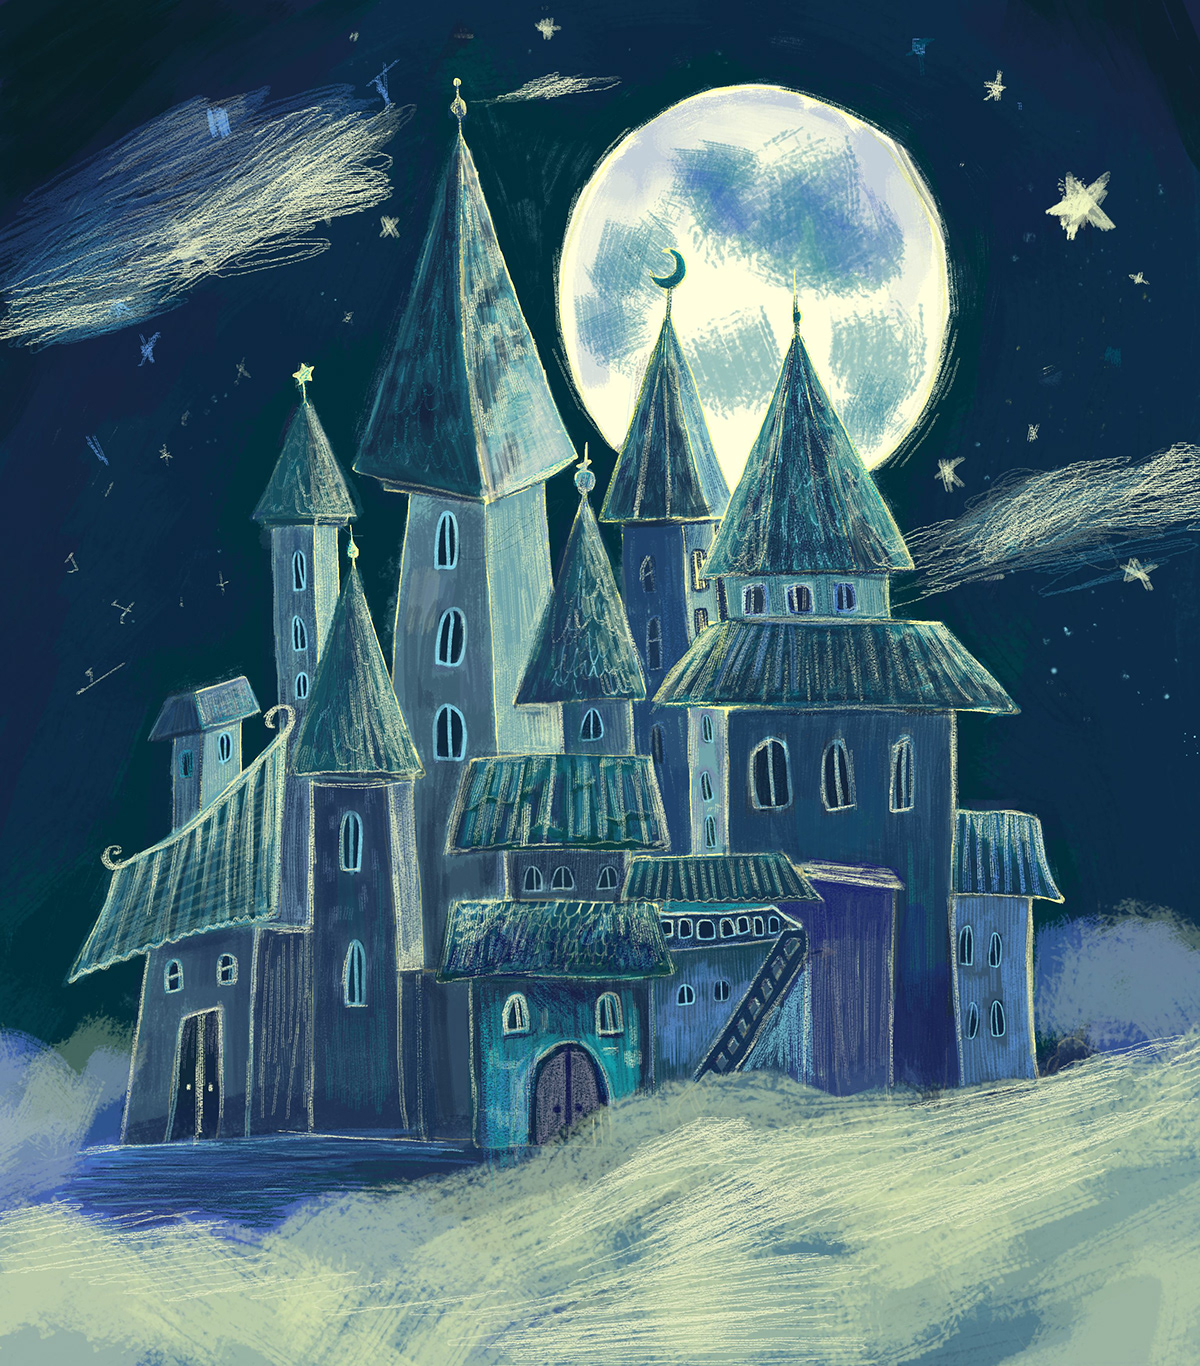 sketch digital illustration Castle fantasy иллюстрация raster art детская иллюстрация